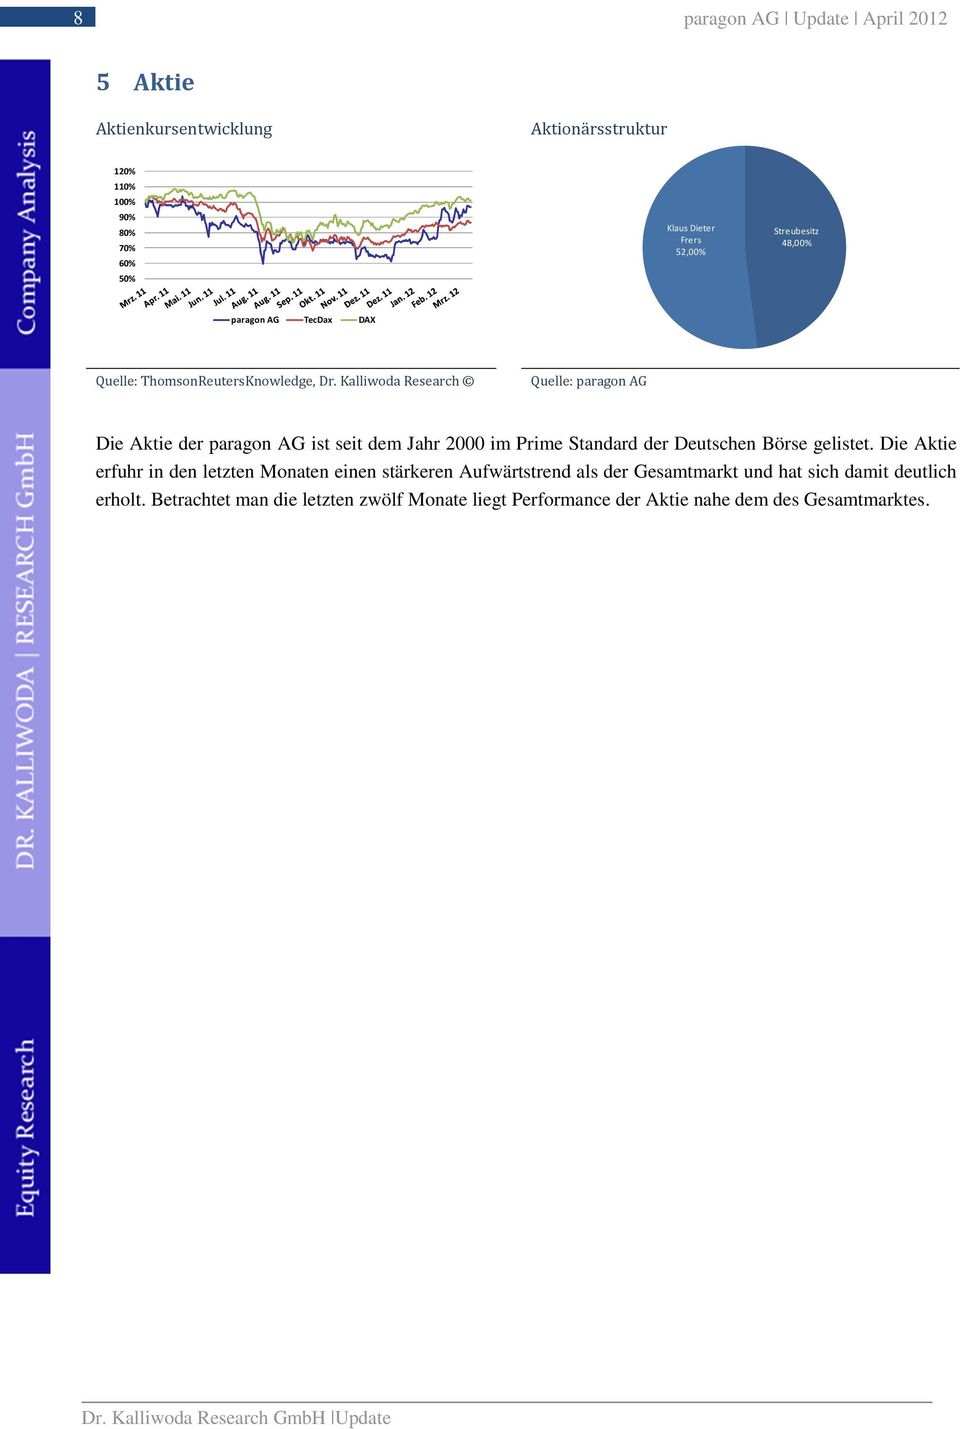 Kalliwoda Research Quelle: paragon AG Die Aktie der paragon AG ist seit dem Jahr 2000 im Prime Standard der Deutschen Börse gelistet.